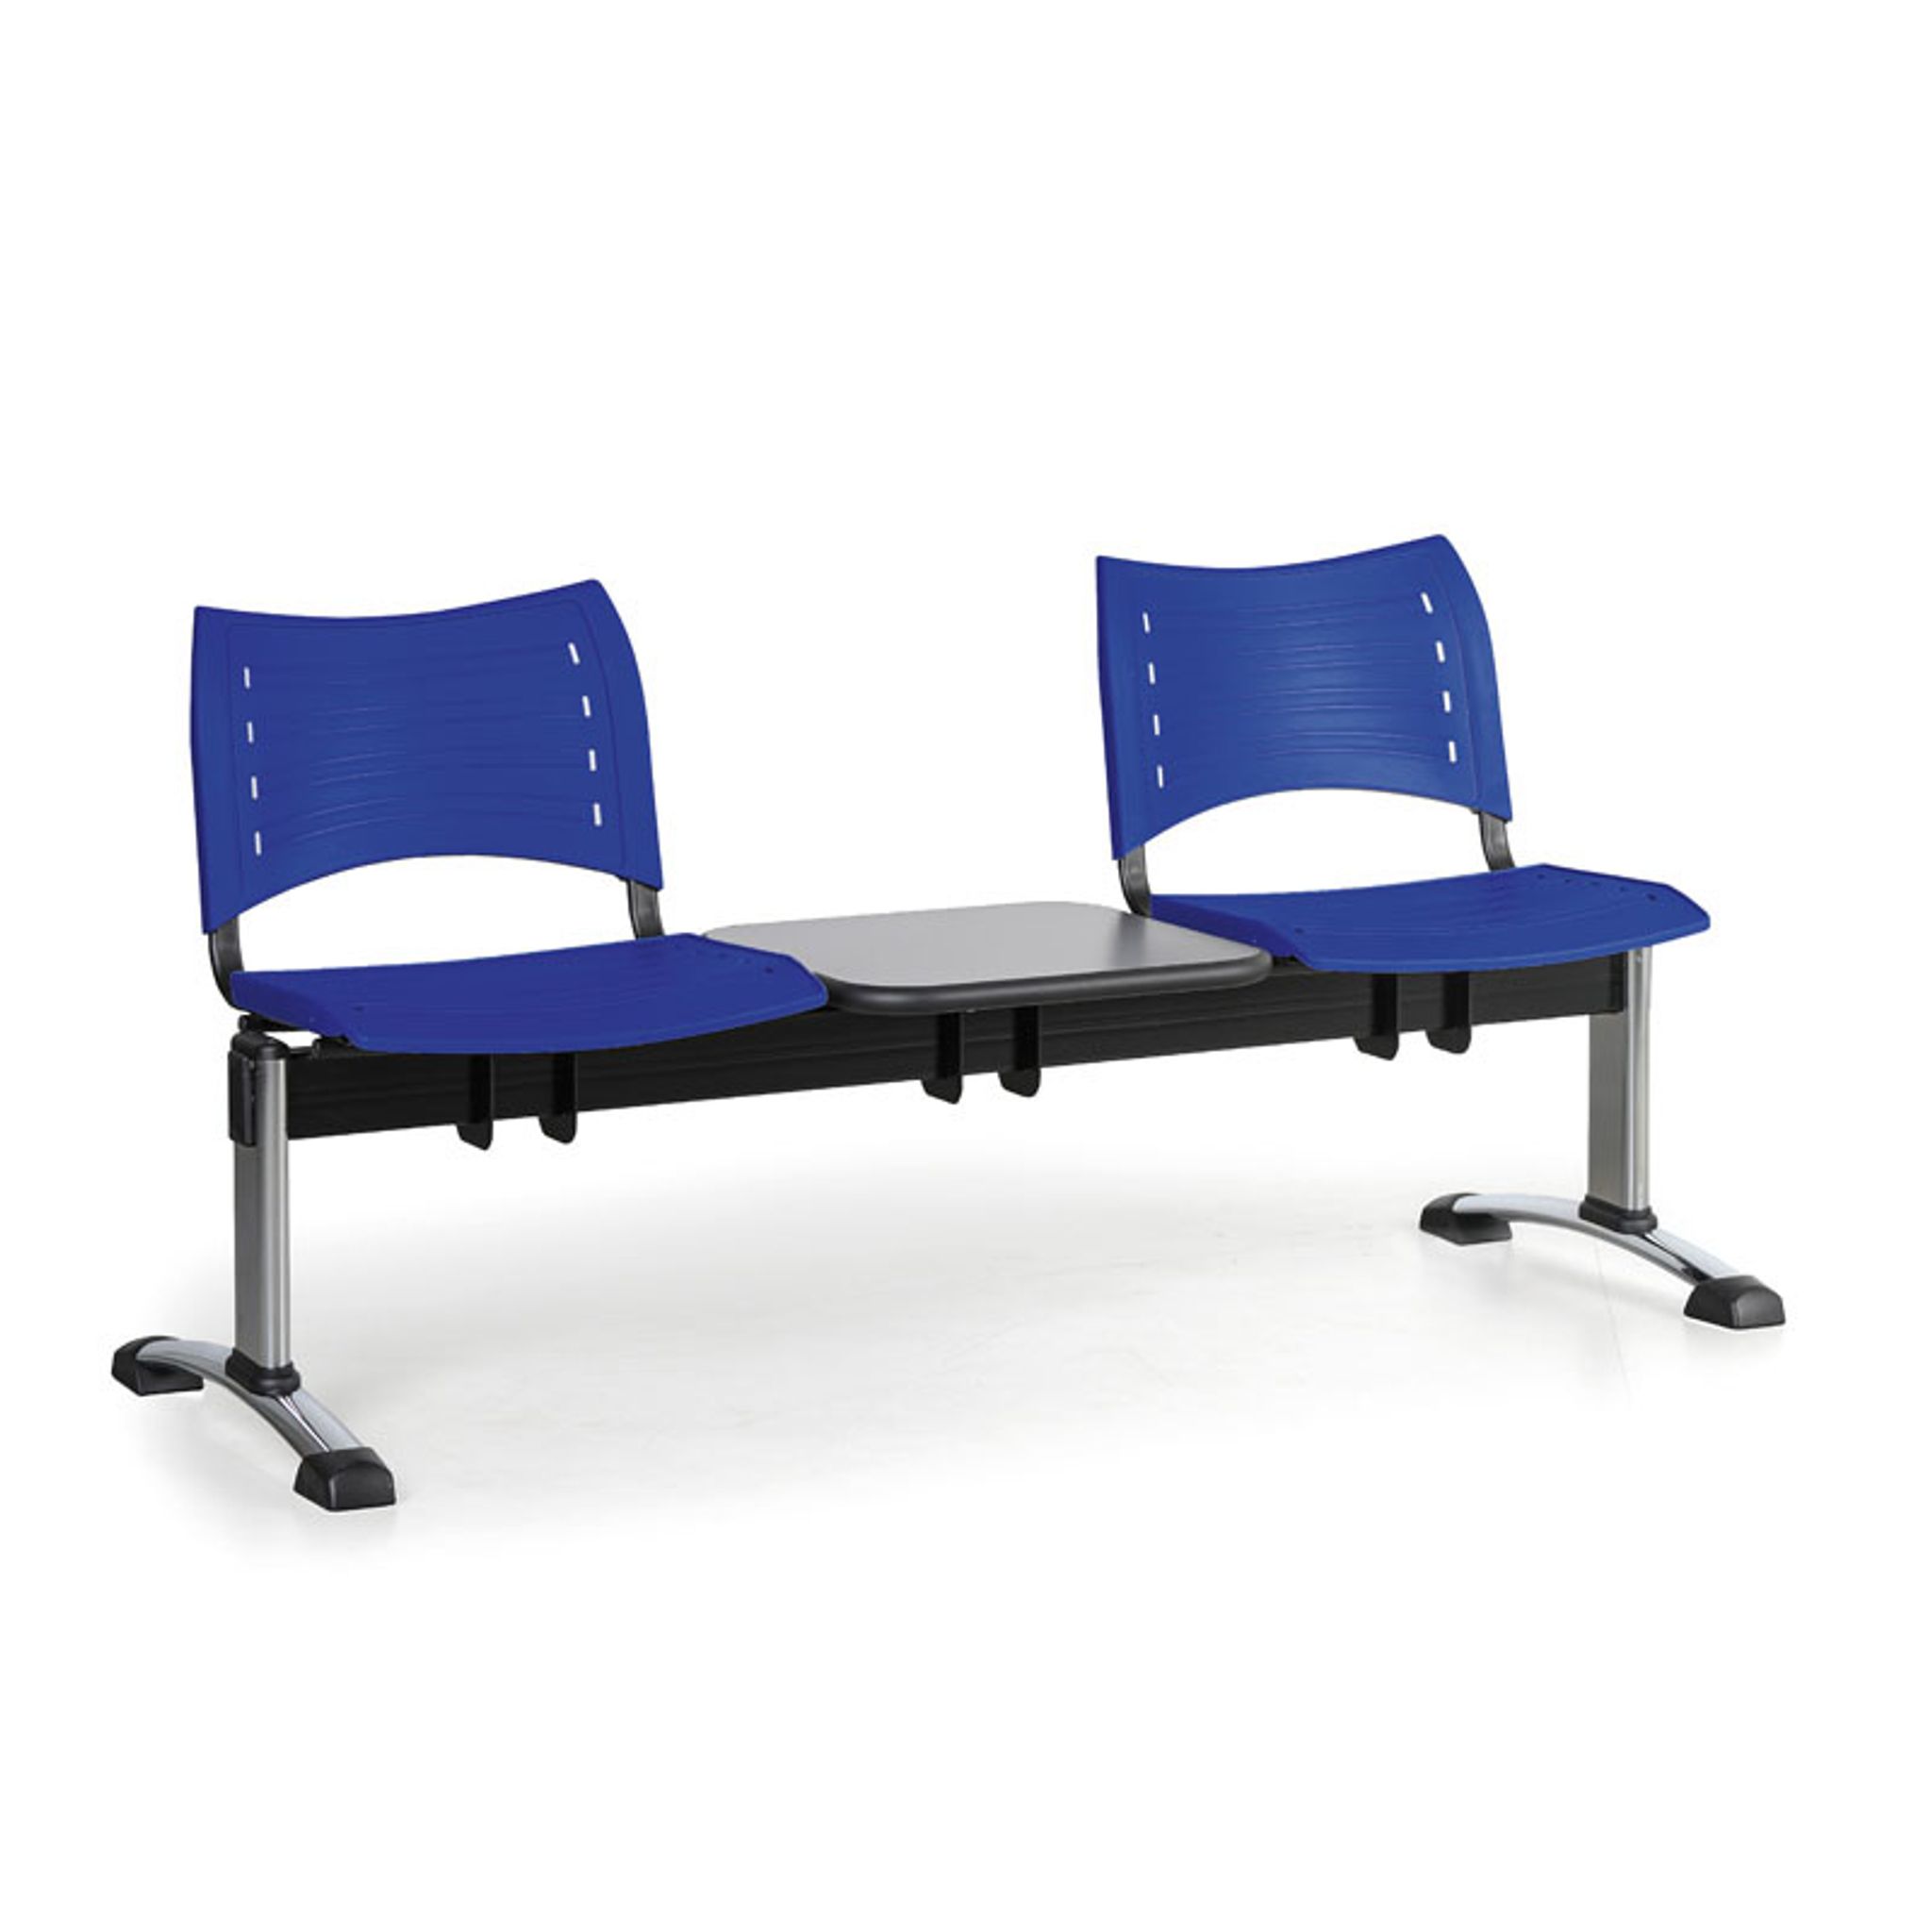 Plastová lavice do čekáren VISIO, 2-sedák + stolek, chromované nohy